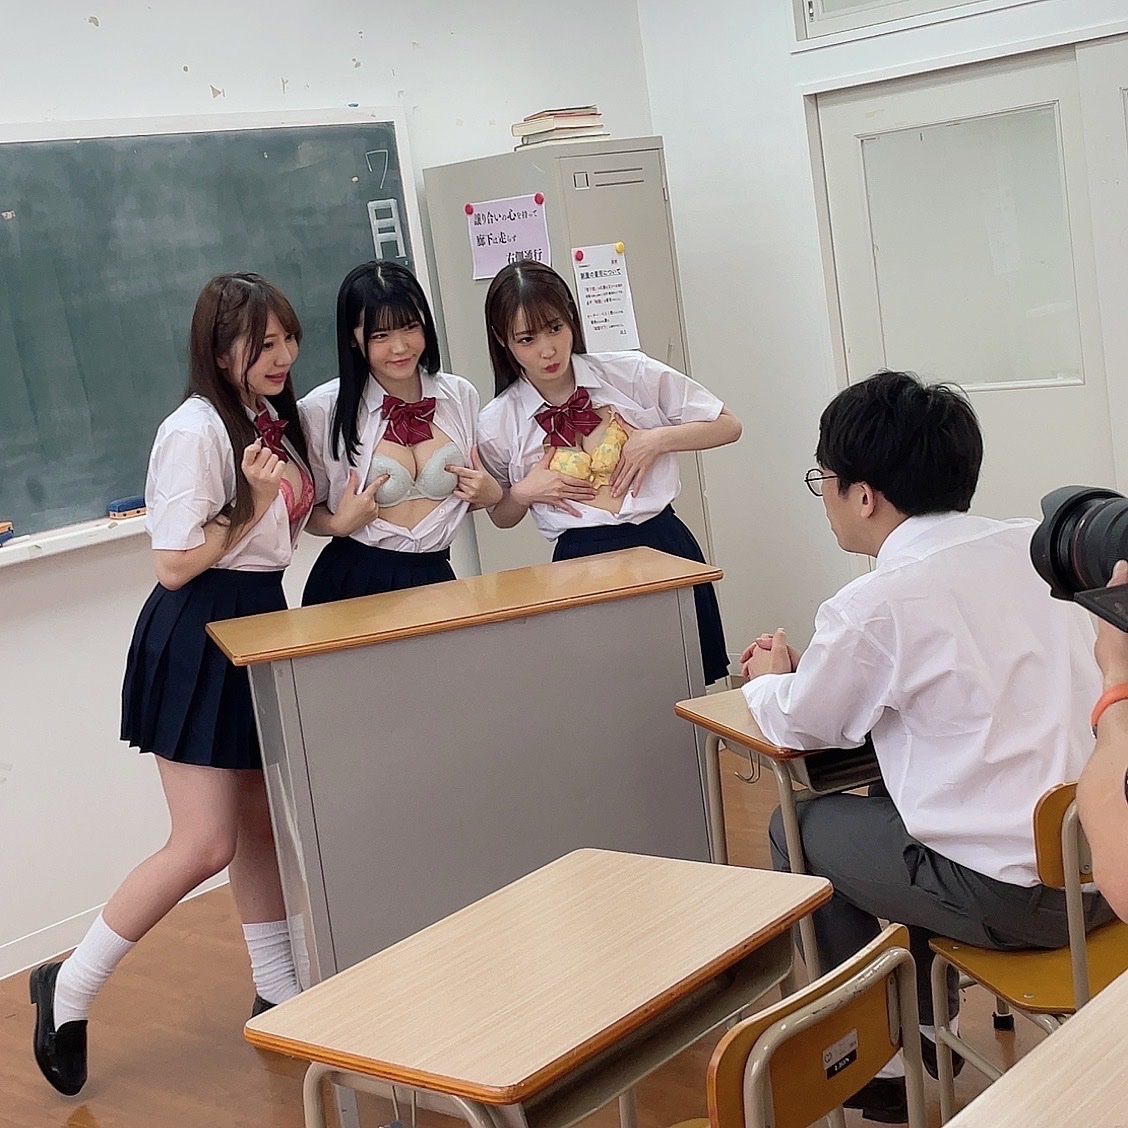 【画像あり】チー牛男子高生、教室で女子高生3人組にブラを見せつけられるｗ